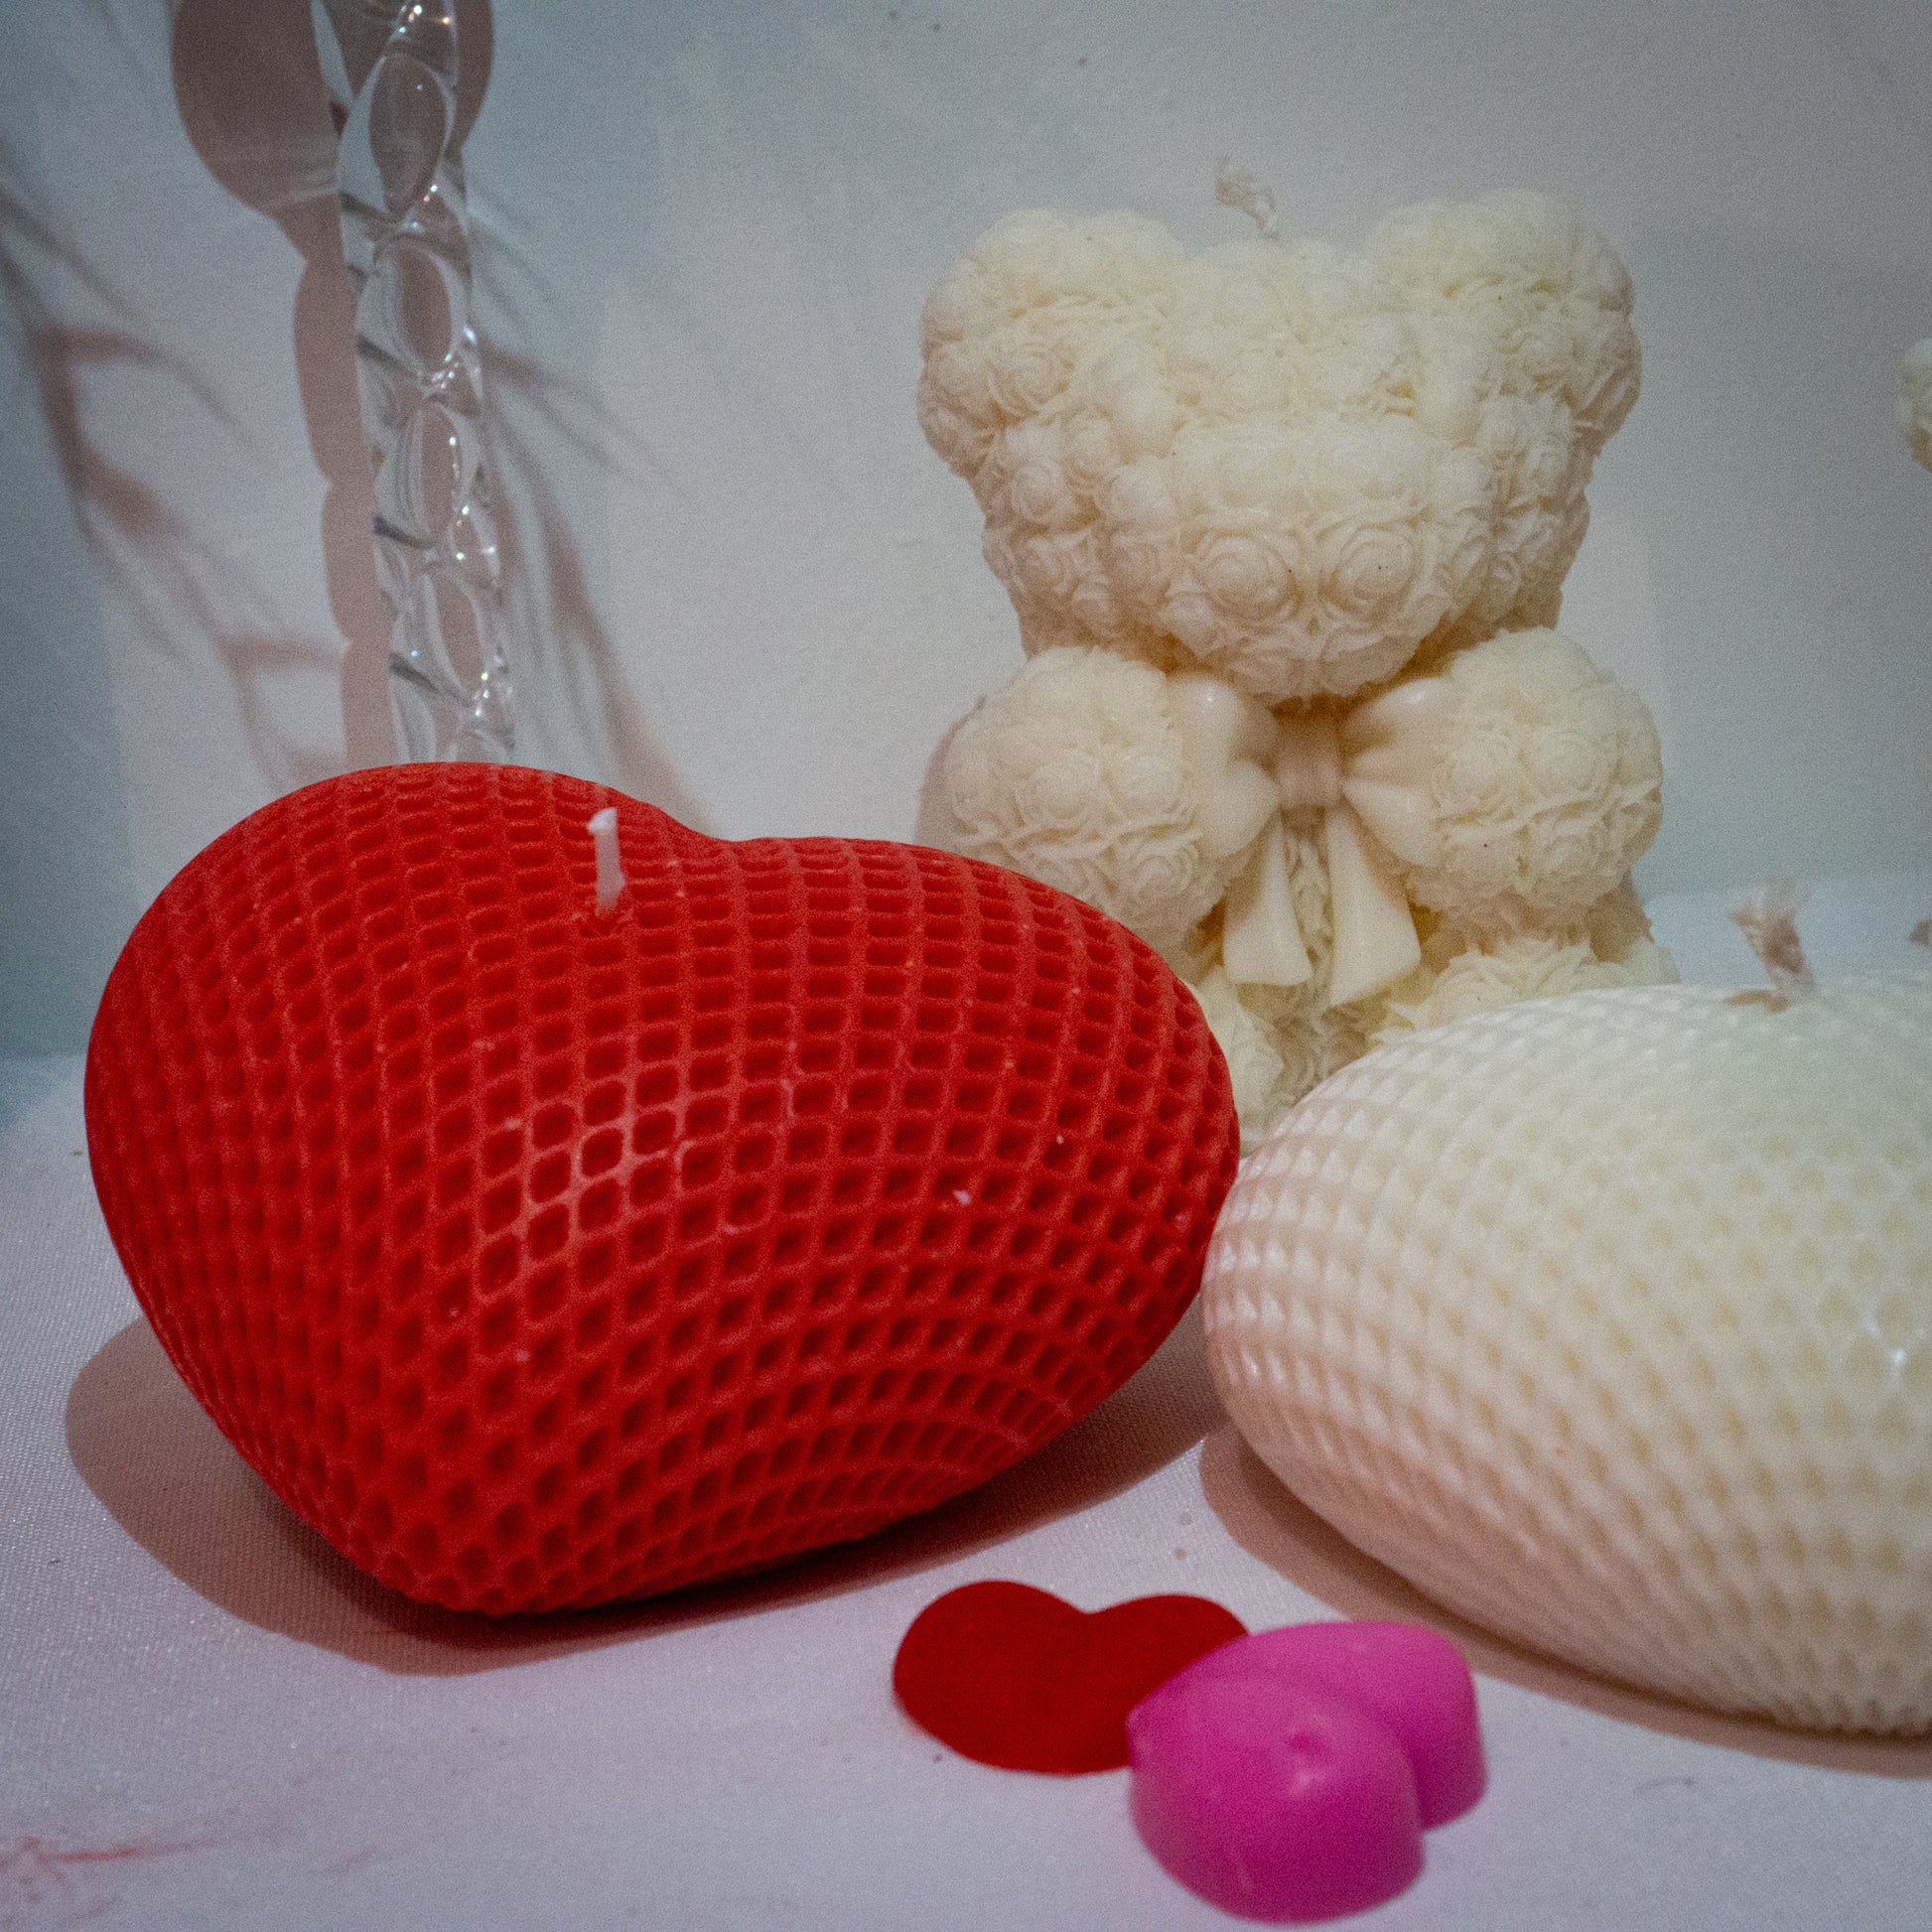 photo 1 de la bougie décorative artisanale qui s'appelle "Beaucoup d'amour" dans les deux couleurs blanc et rouge avec en arrière plan une bougie Ours